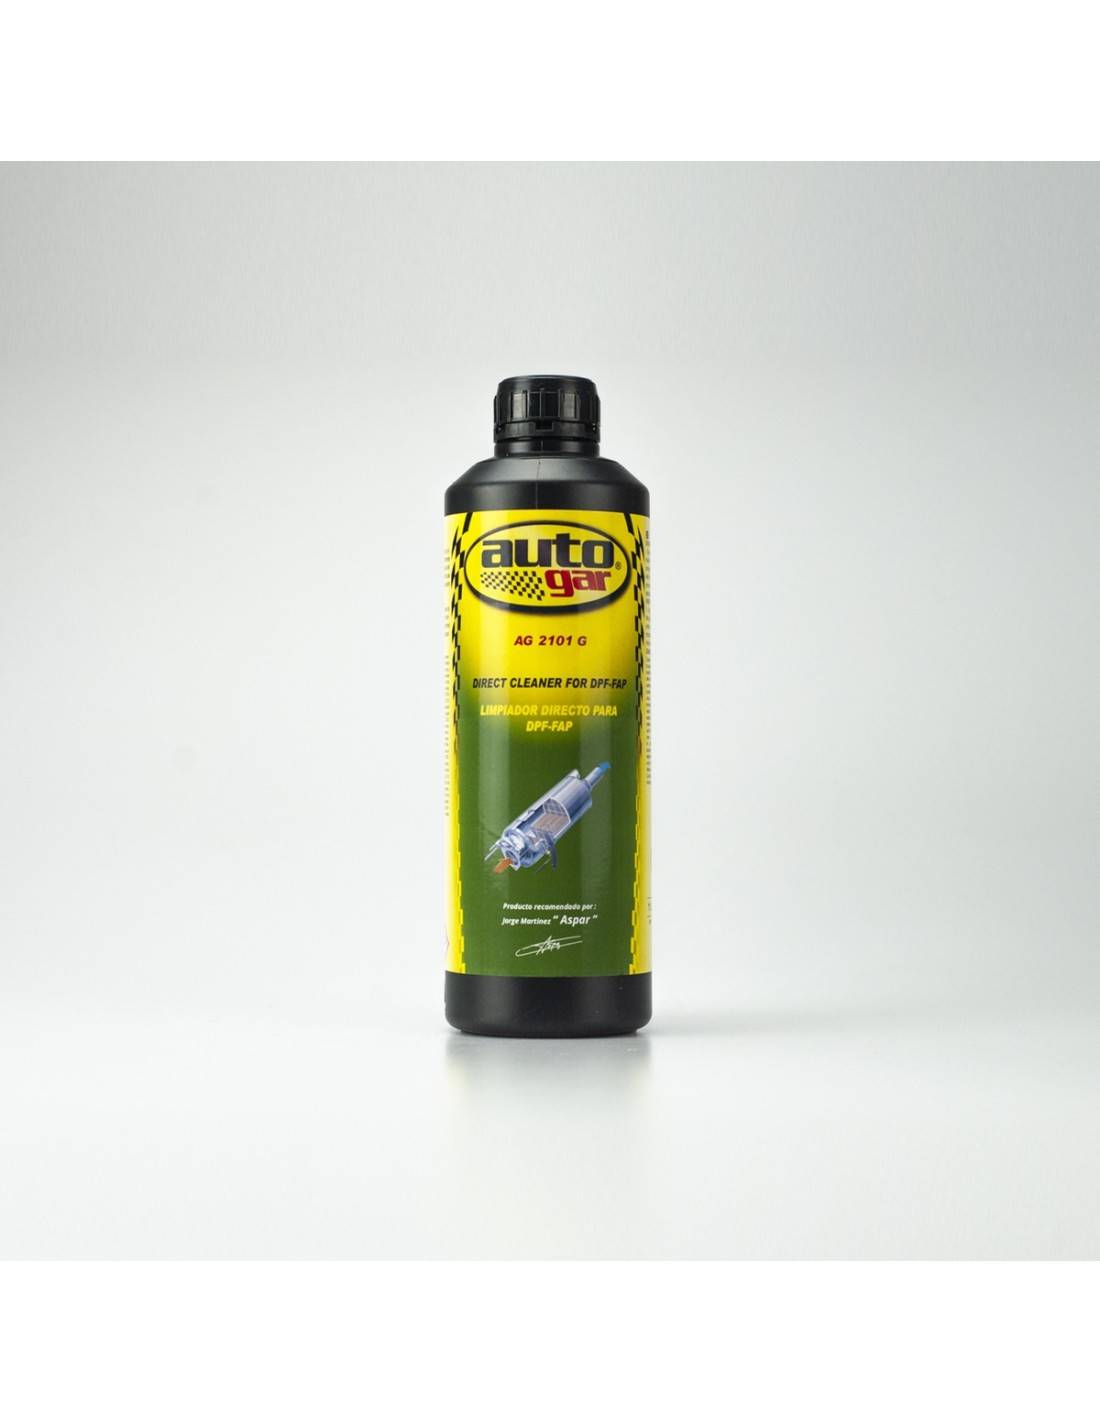 Spray limpiador filtro partículas FAP y DPF, 400ml